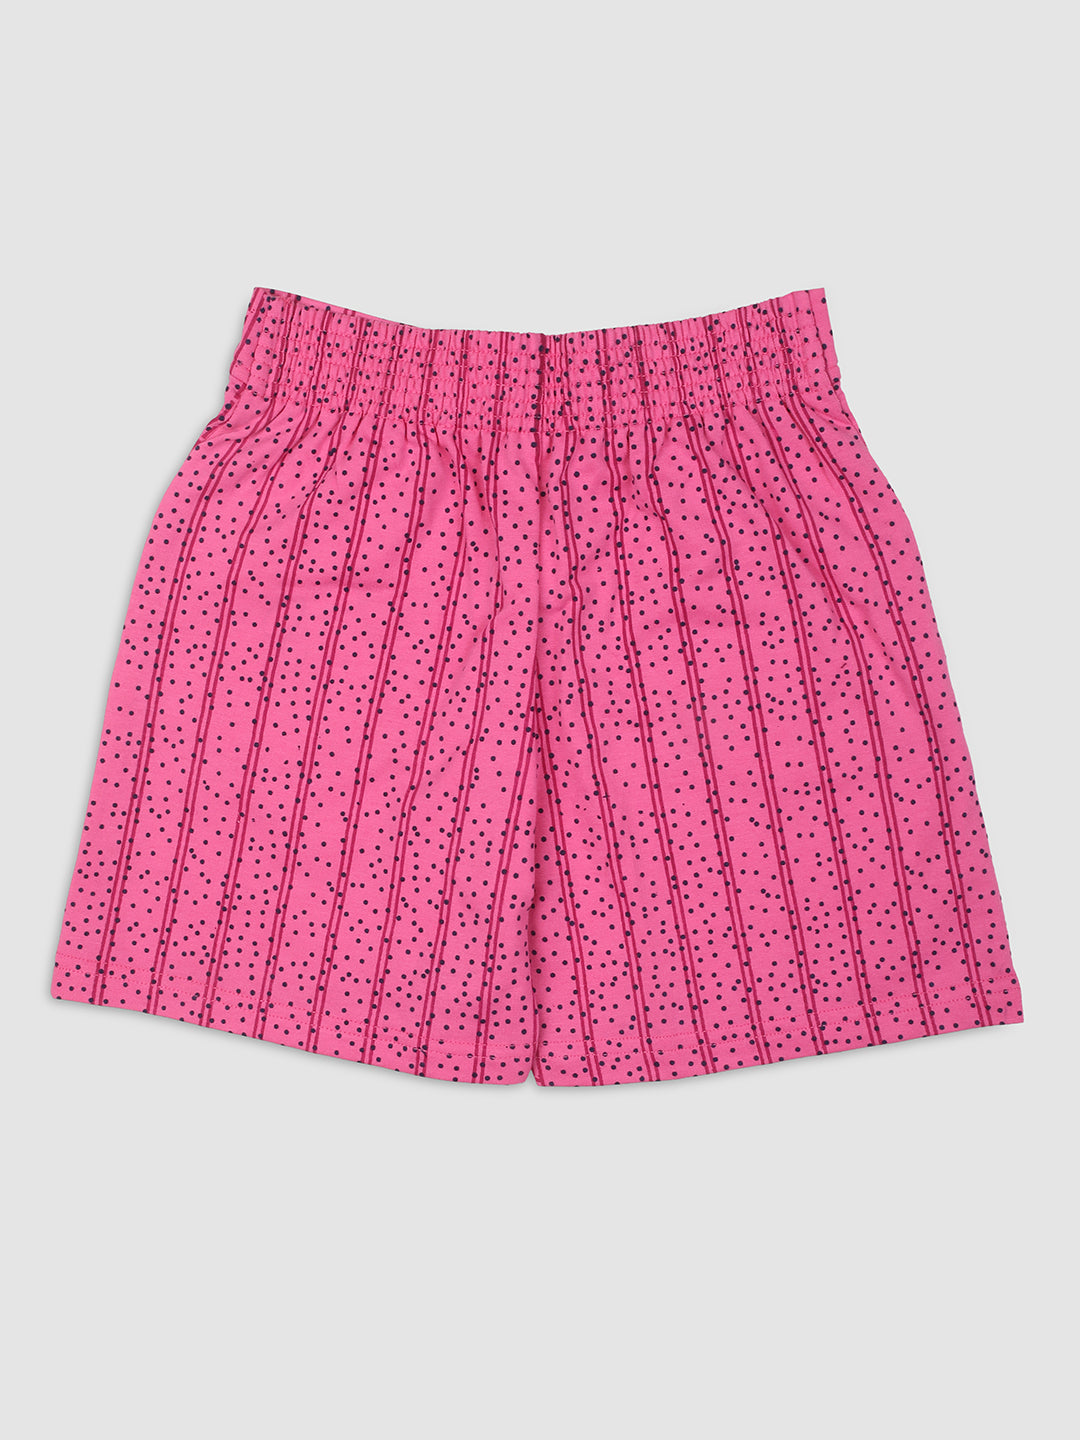 Nins Moda Girls Dot Printed Shorts-Pink